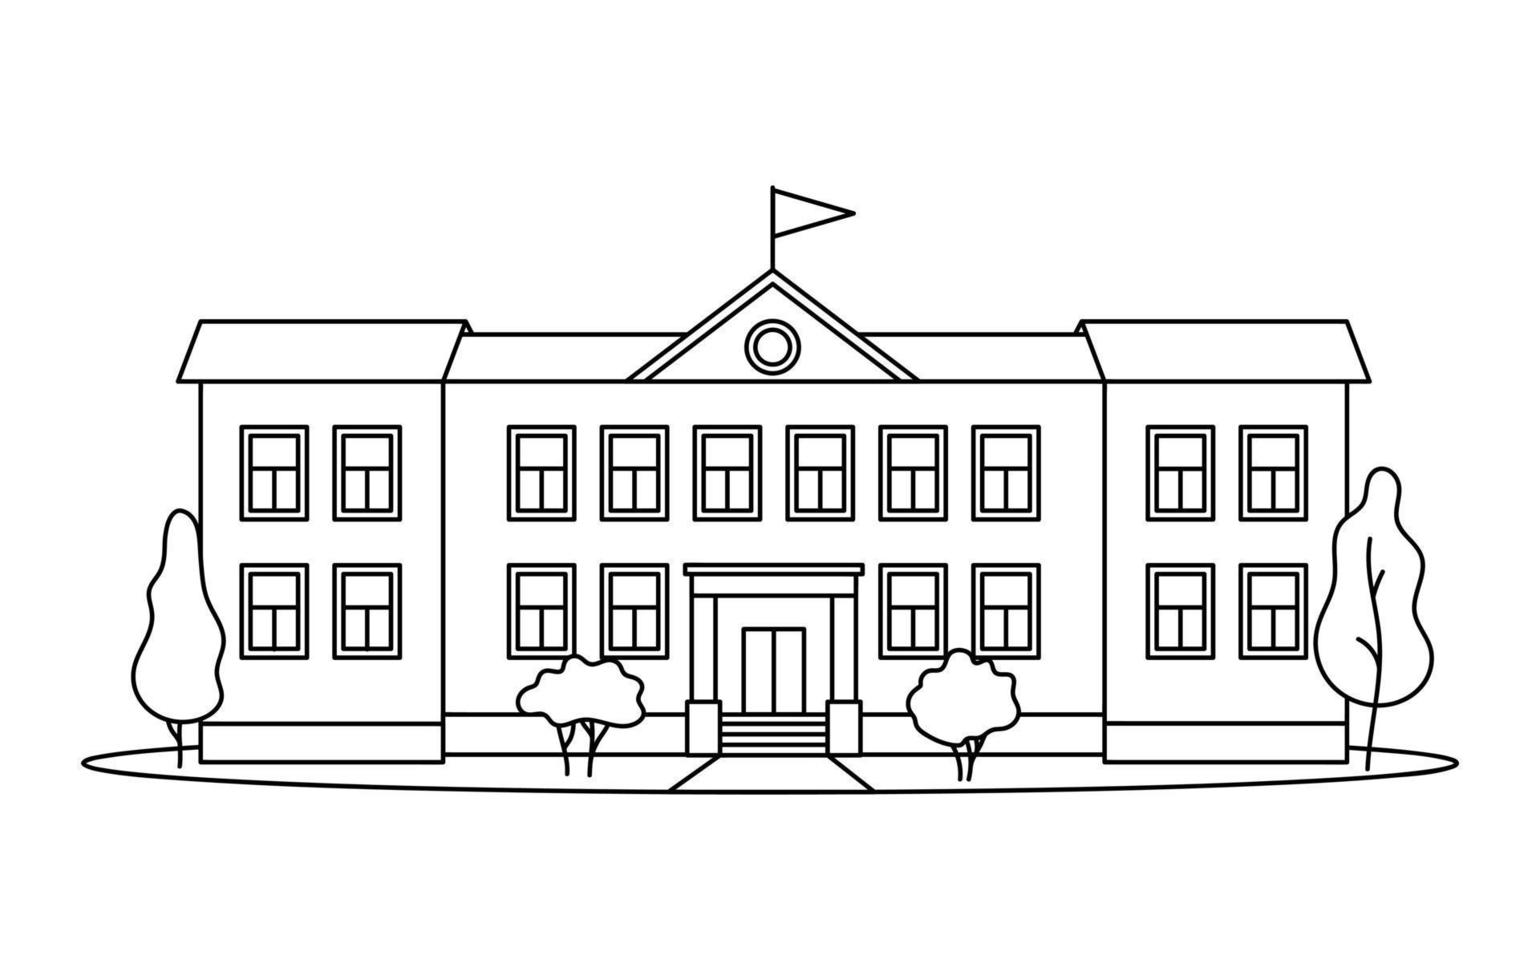 edificio scolastico classico con colonne per bambini o alunni disegnate con linee nere di contorno su sfondo bianco. vettore